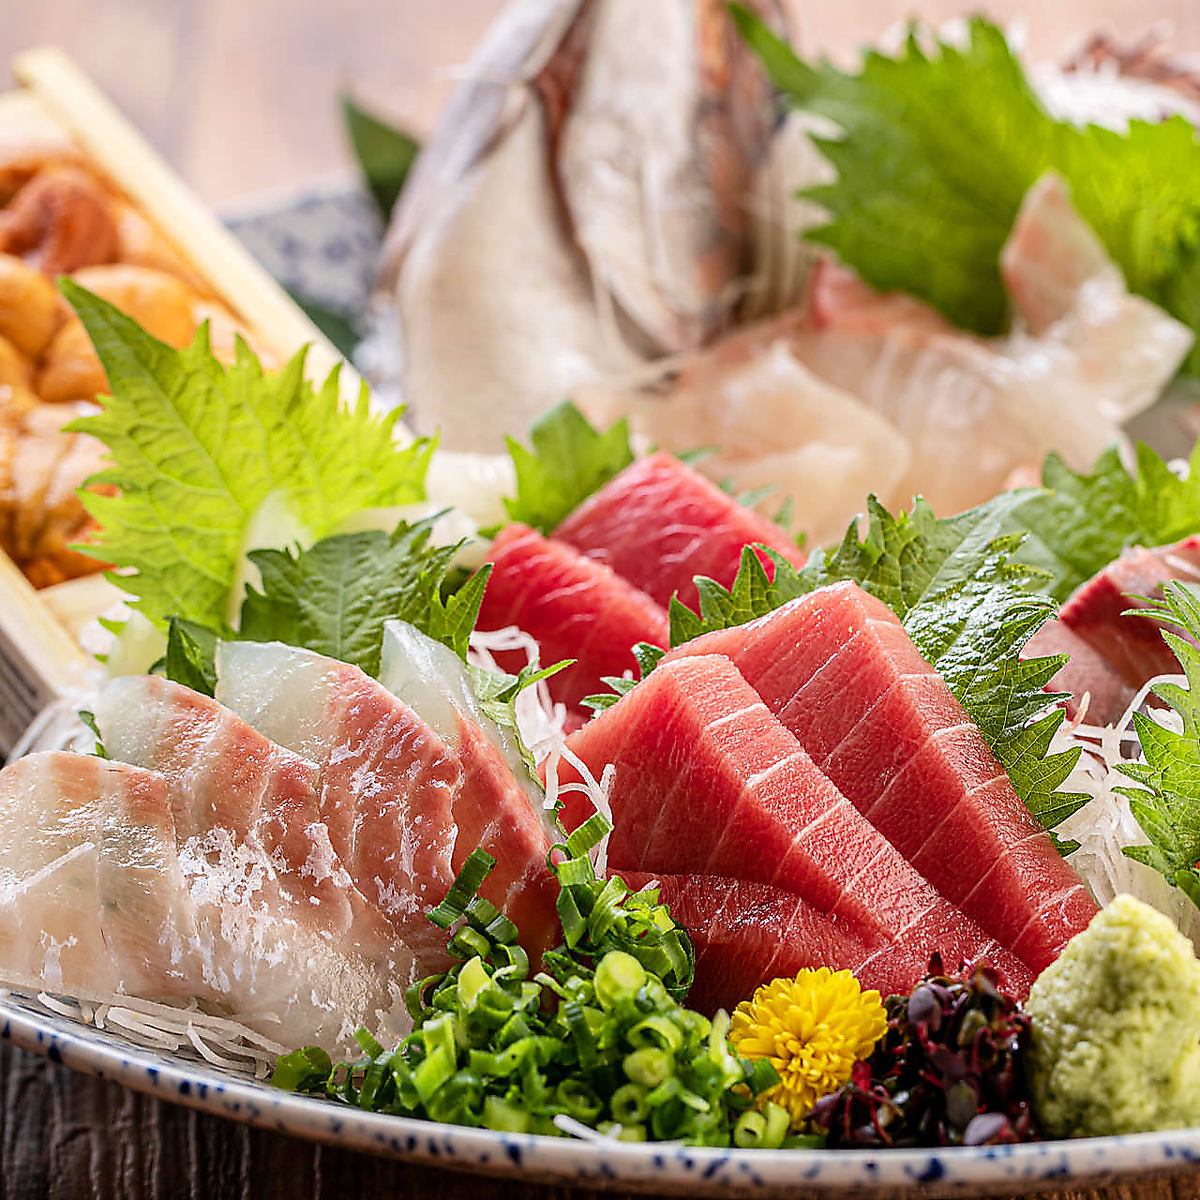 [从长冈站步行1分钟]我们以使用新鲜捕获的鲜鱼制作的美味佳肴而自豪。